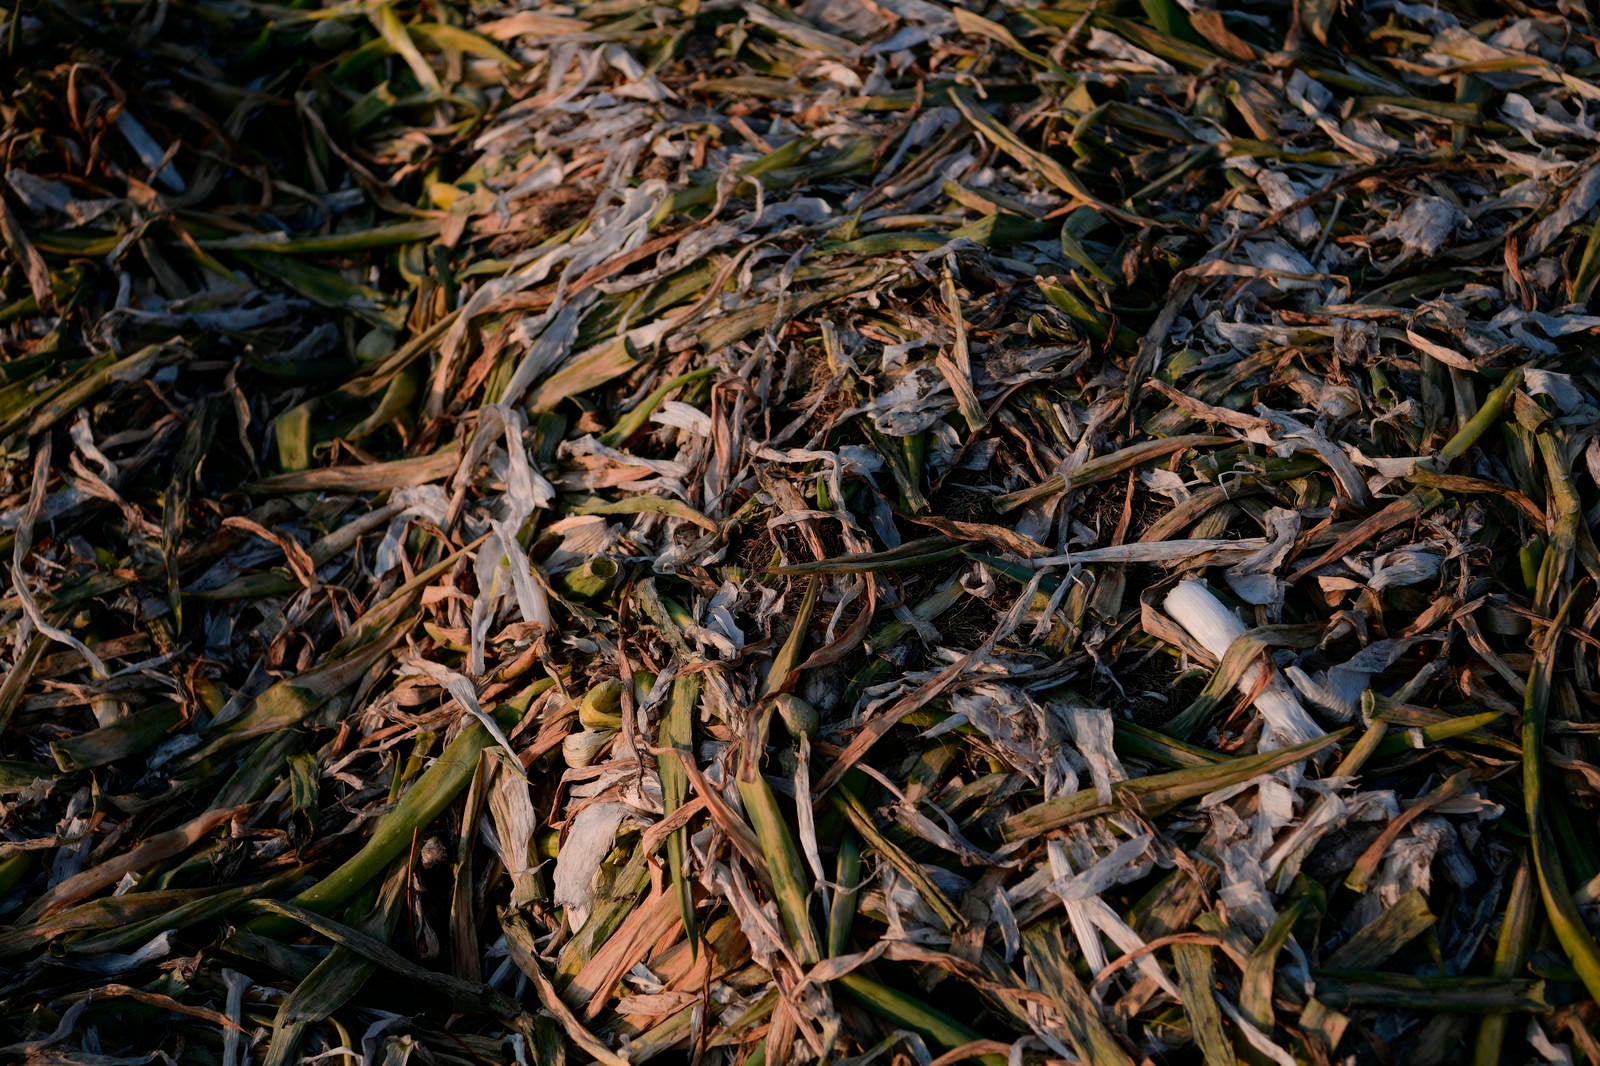 「畑の脇に捨てられたネギ」の写真